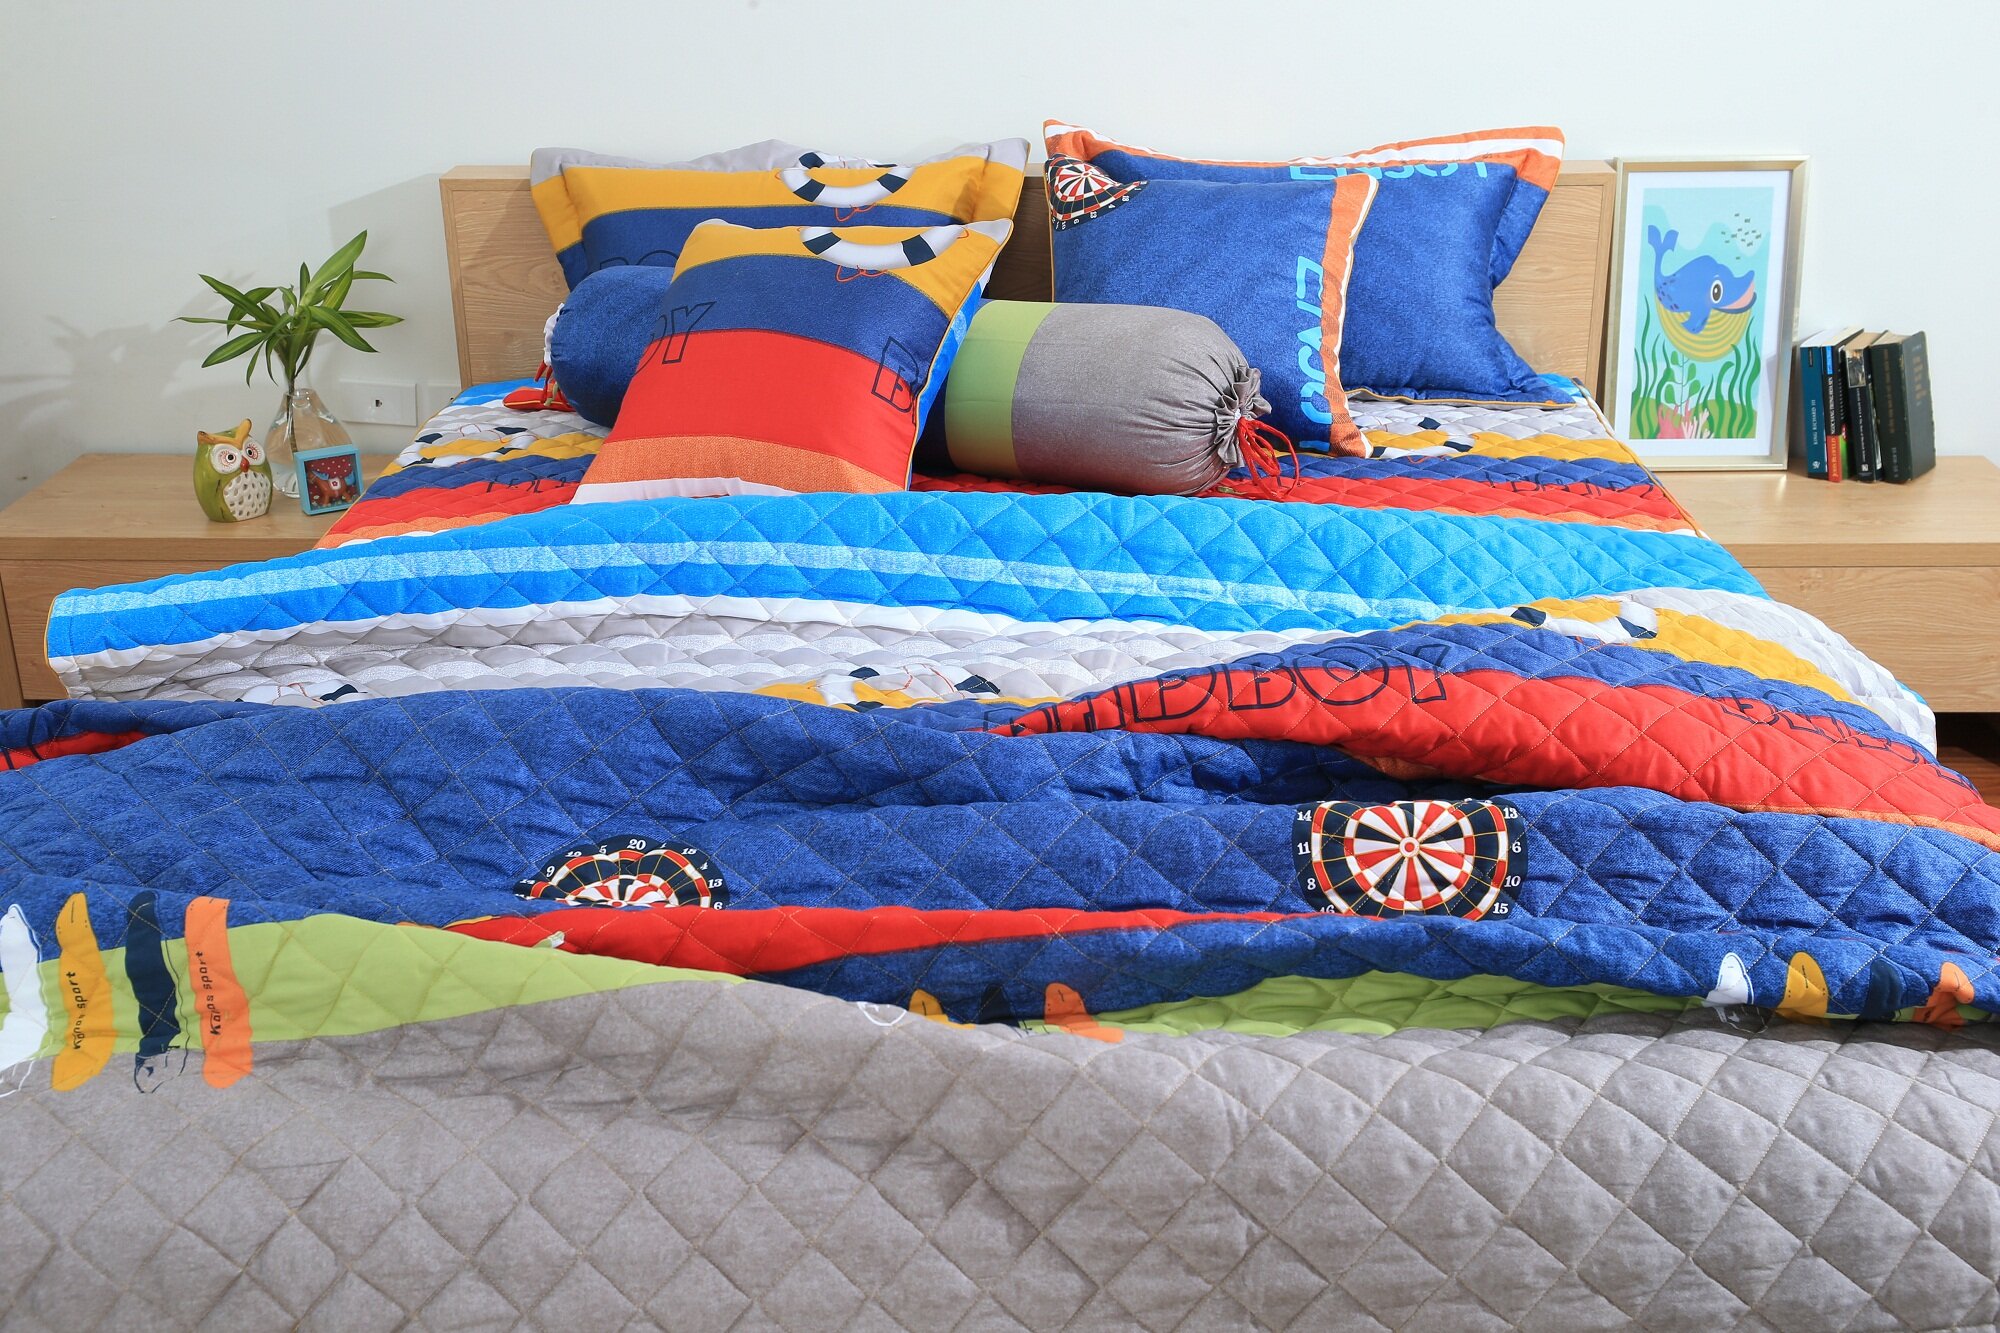 Bạn có thể cân nhắc lựa chọn bộ chăn ga tuyệt vời này cho giấc ngủ của mình thêm sâu